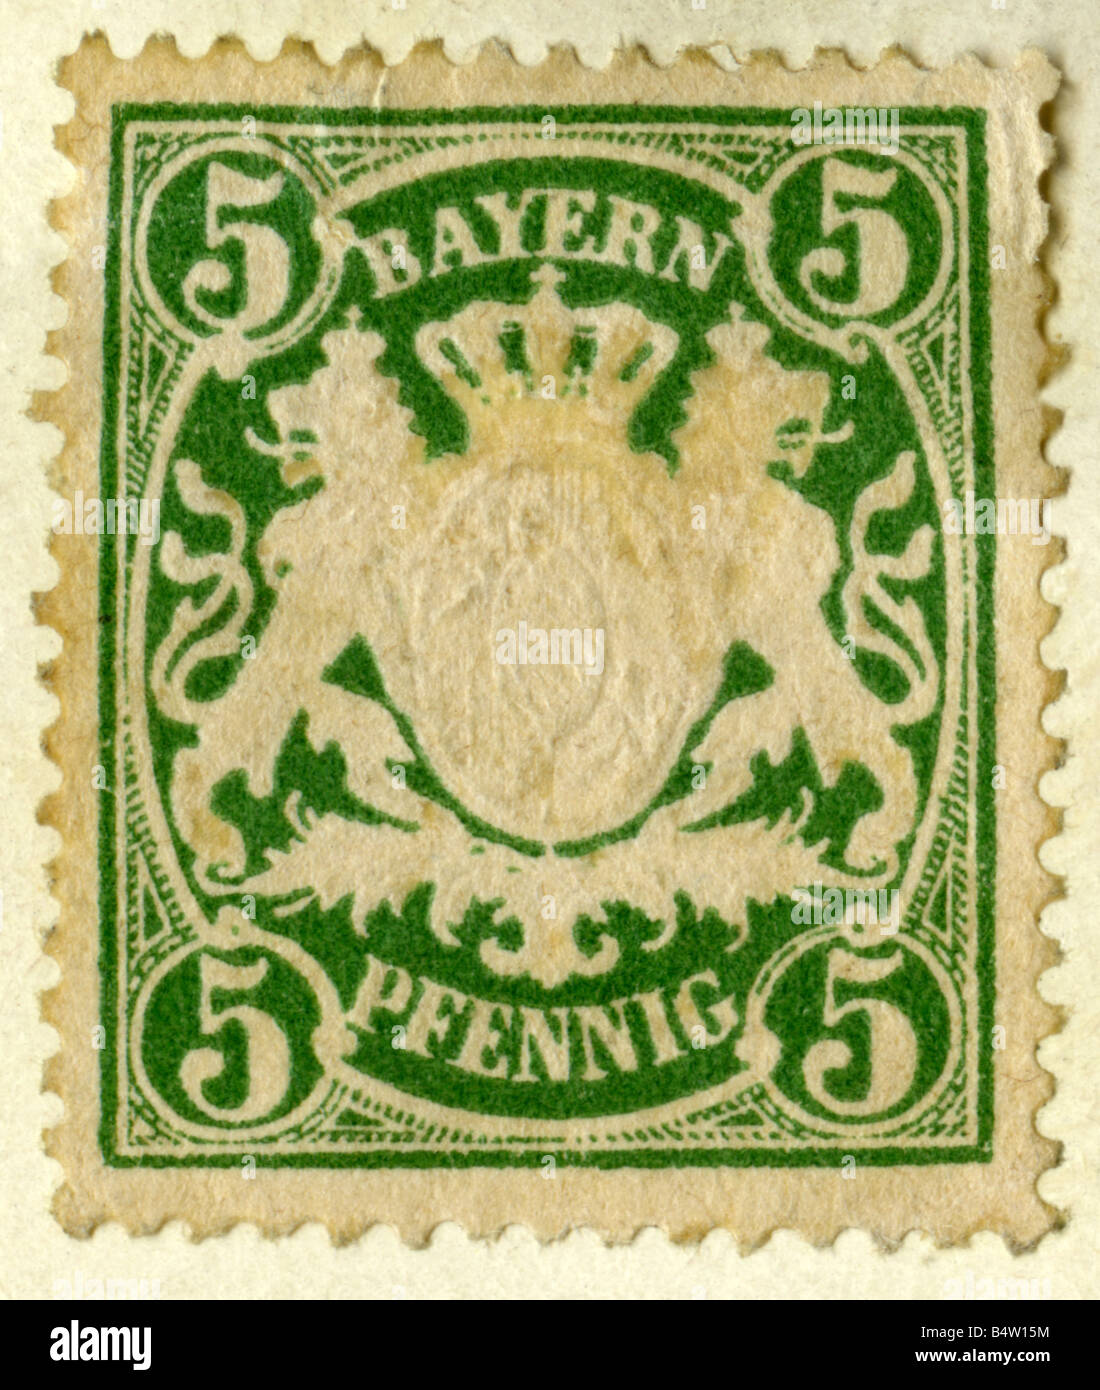 5 pfennig stamp immagini e fotografie stock ad alta risoluzione - Alamy